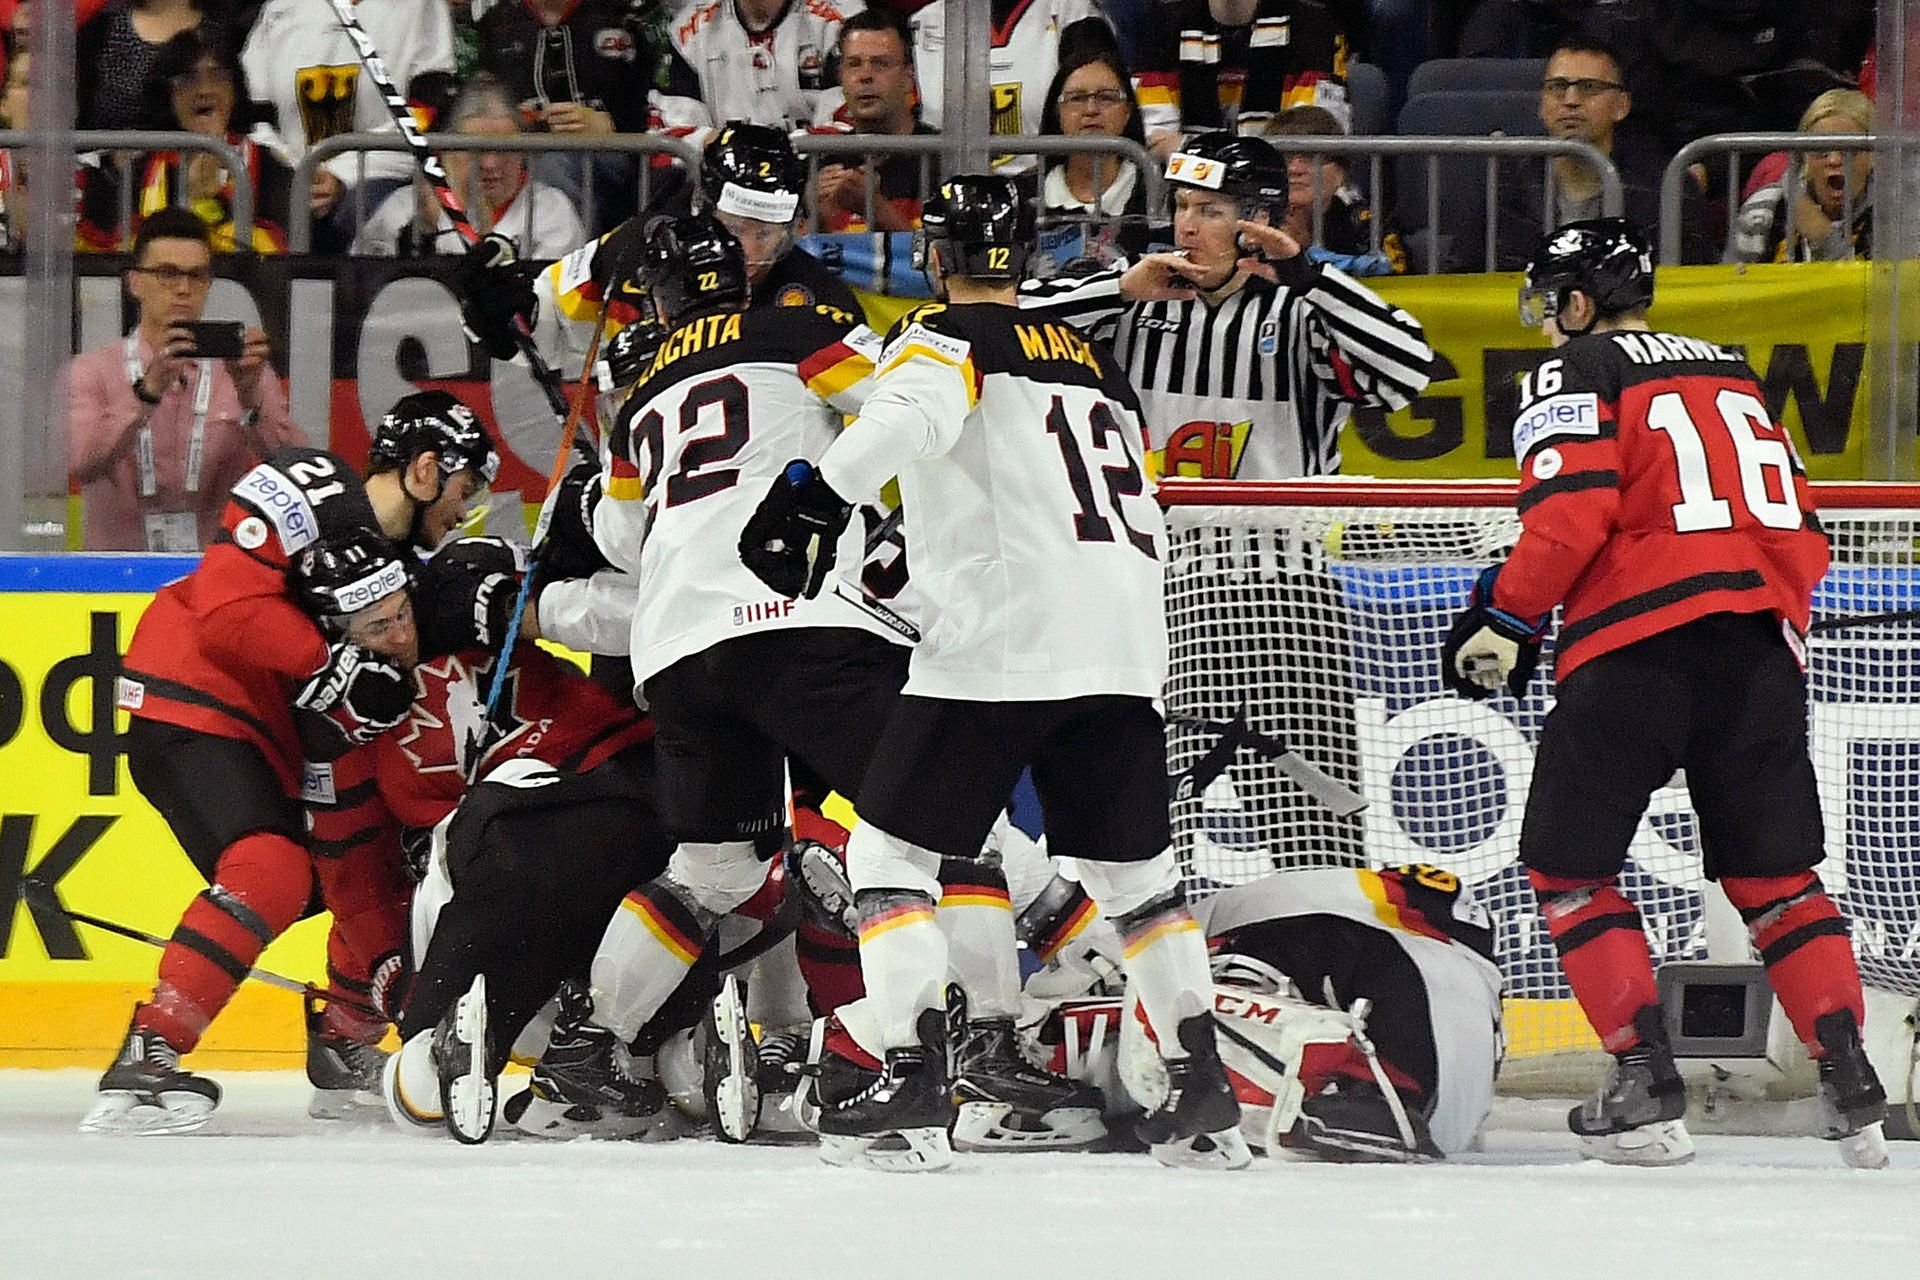 Eishockey-WM in Köln Eishockey-WM in Köln live Deutschland unterliegt Kanada nach großem Kampf